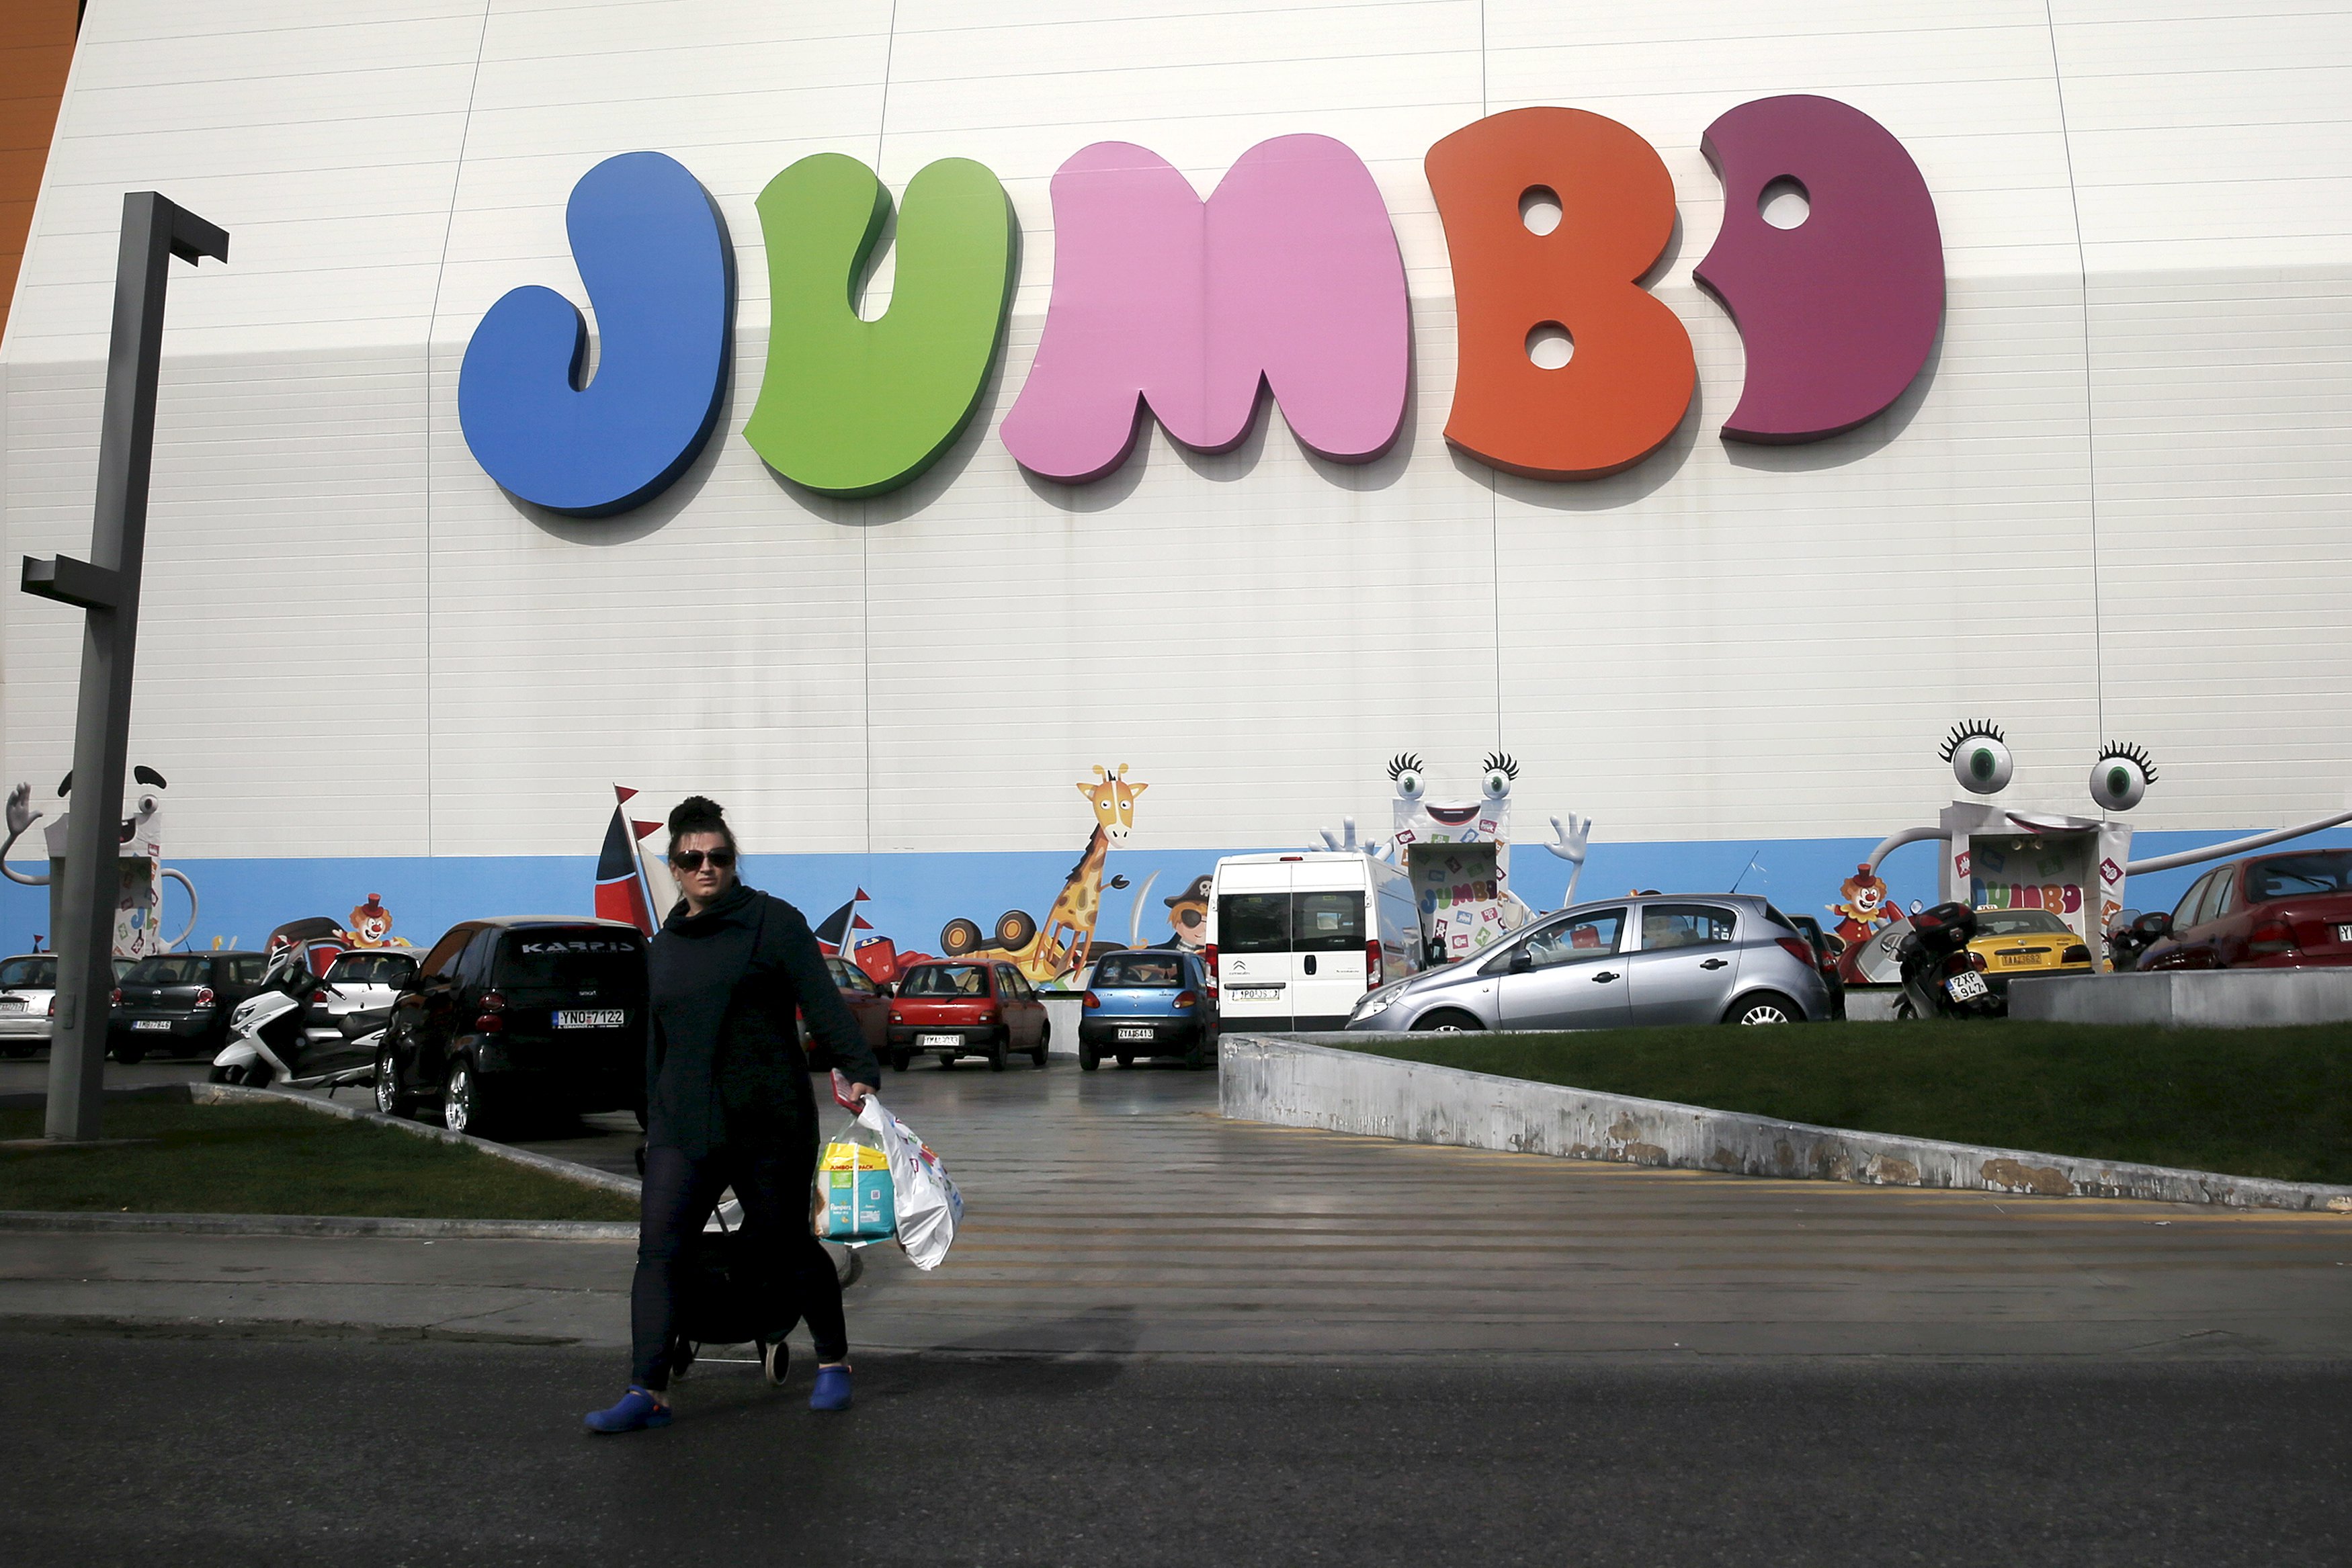 Αυξήθηκαν 8% οι πωλήσεις της Jumbo στο εξάμηνο